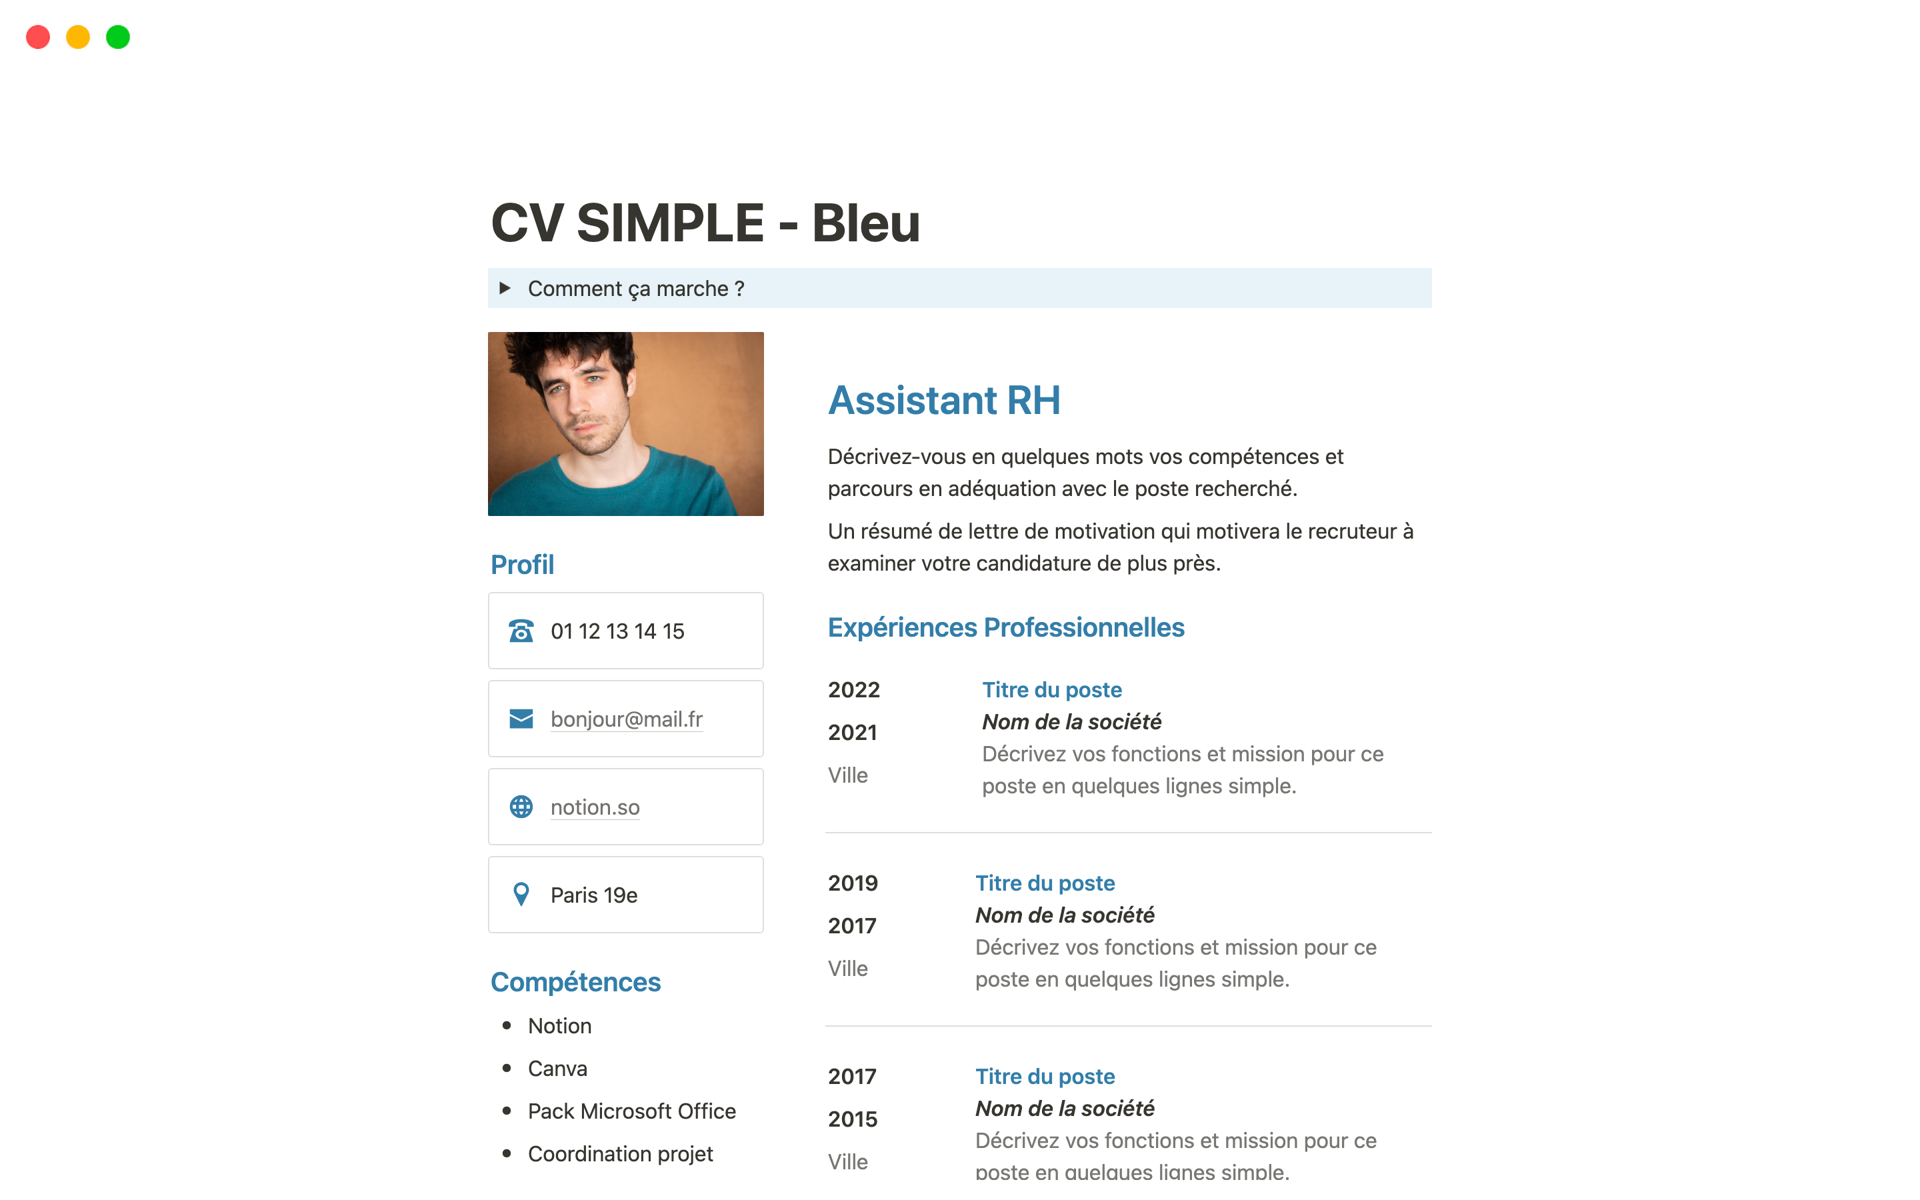 Vista previa de plantilla para CV simple bleu en français